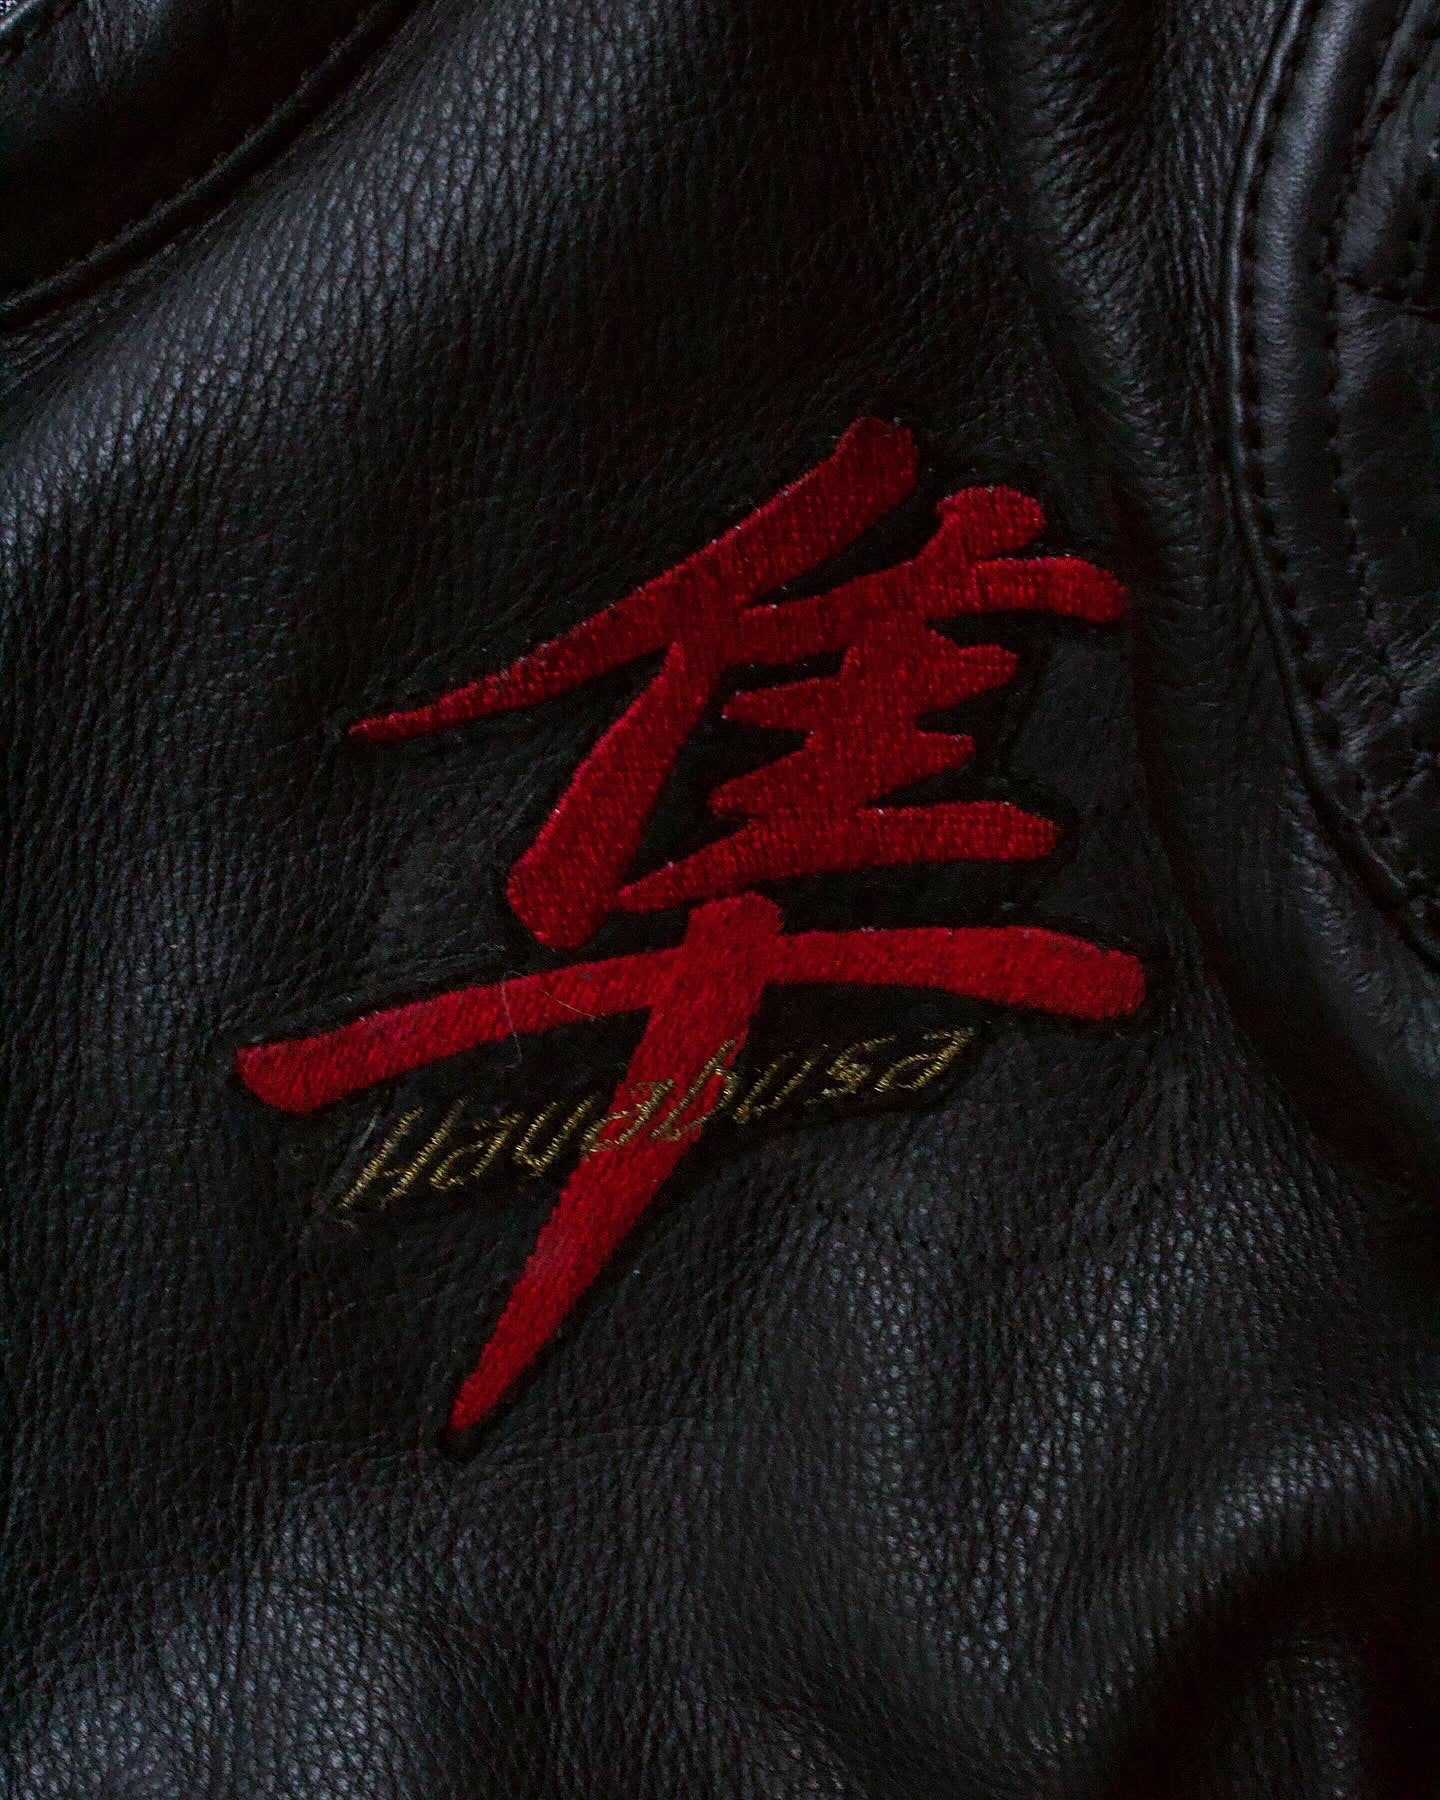 Kadoya K’s Leather Early 00s ‘Hayabusa’ Racing Cowhide Leather Padded Motorcycle Jacket